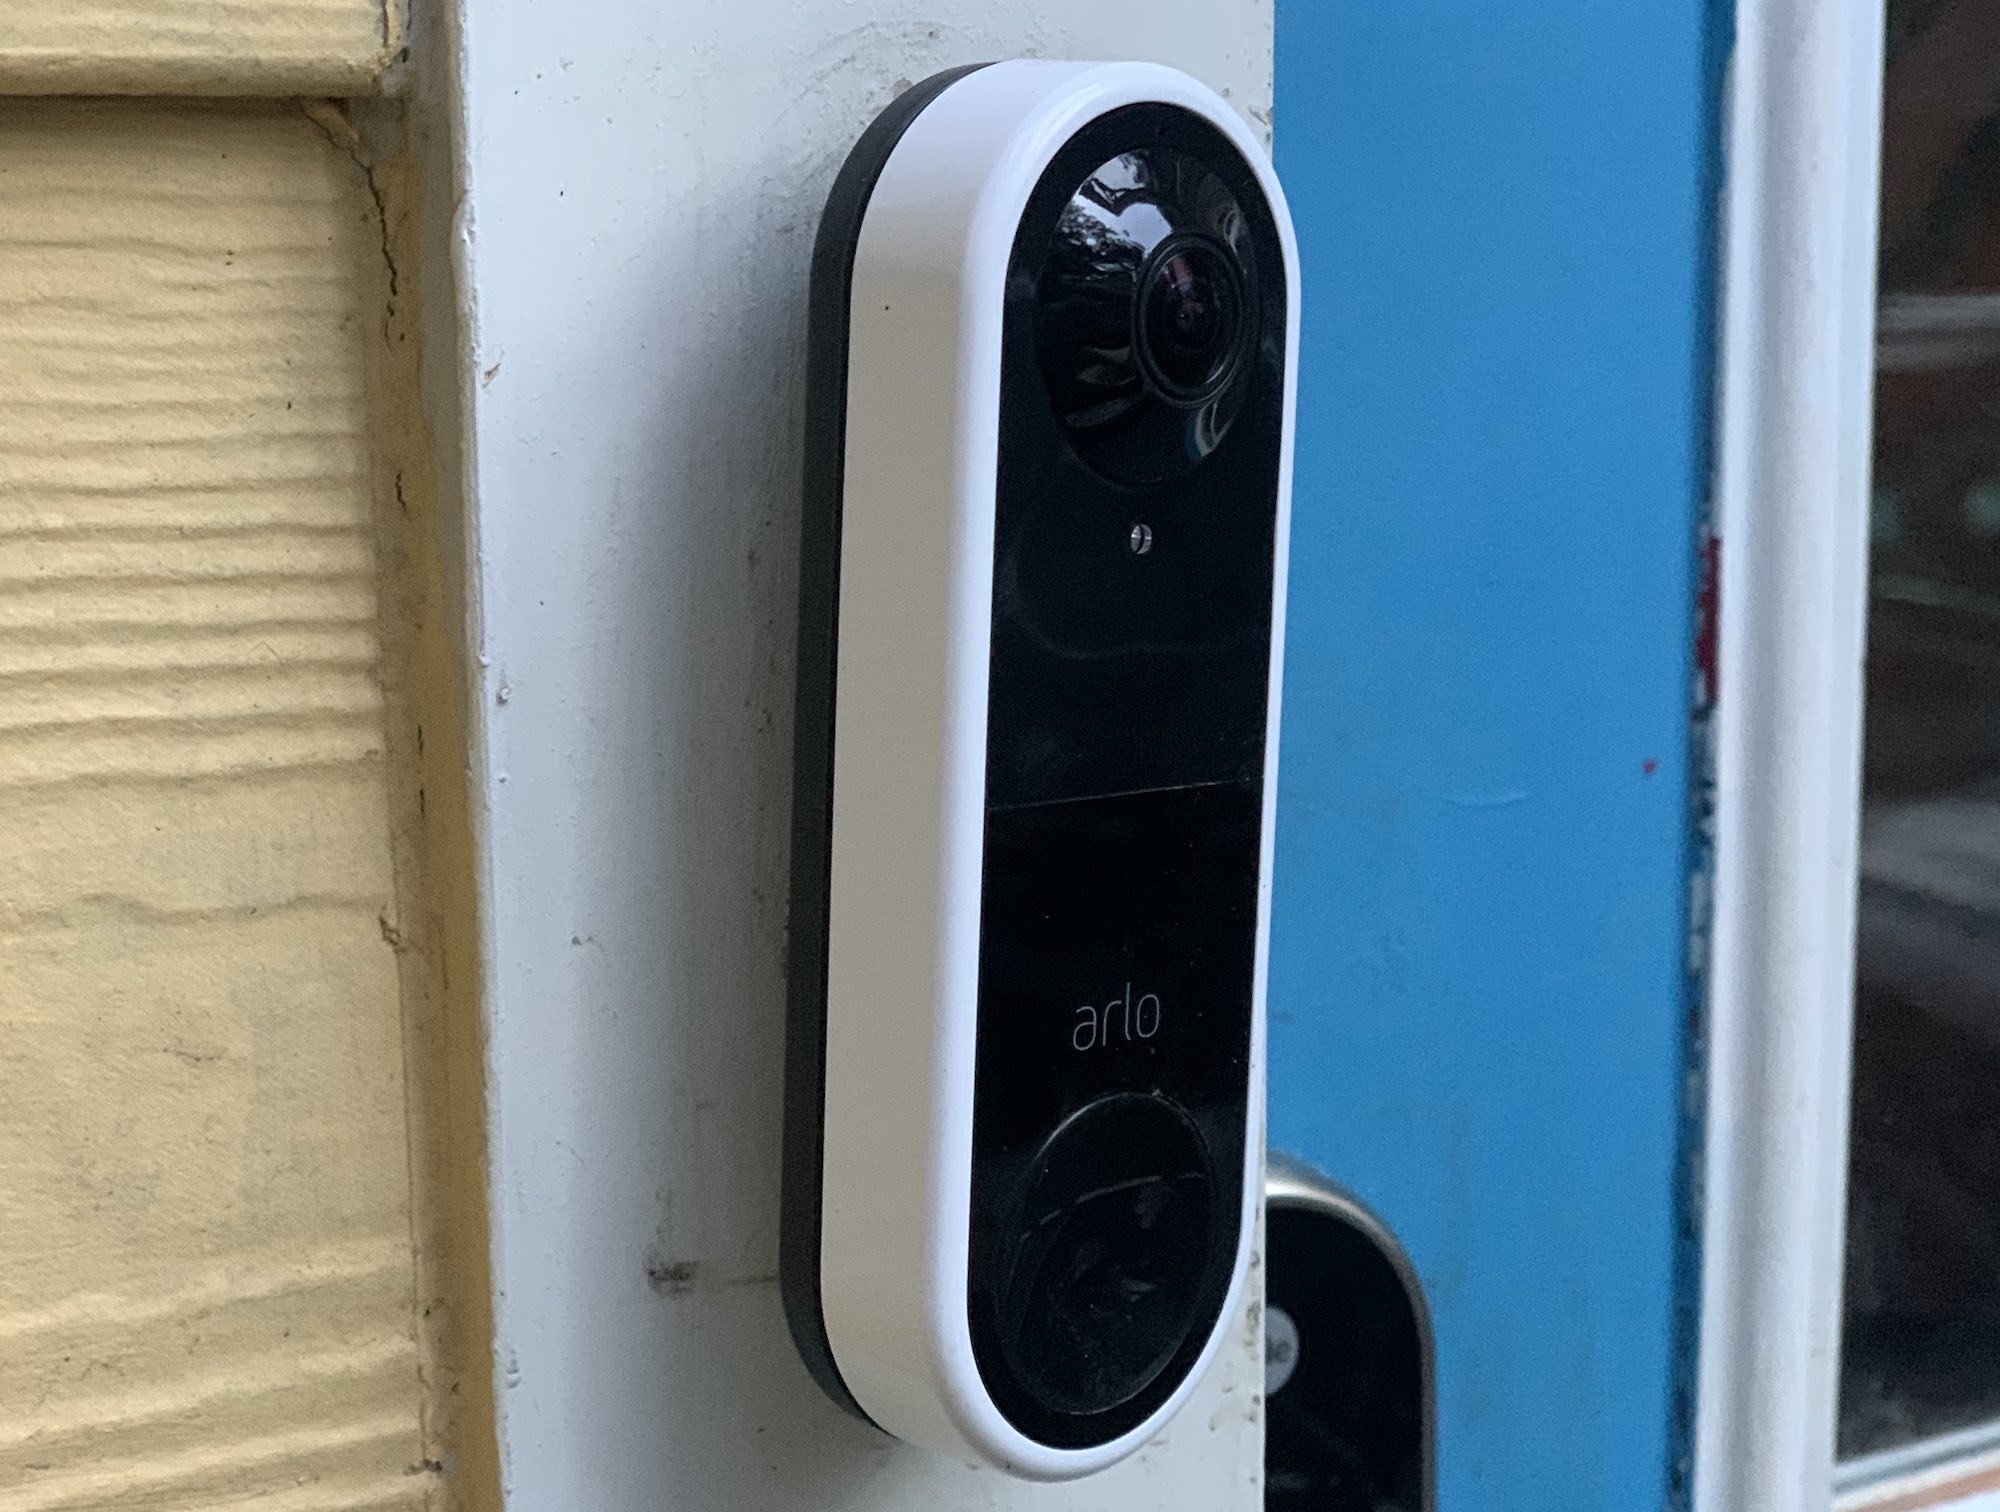 Arlo Video Doorbell Review